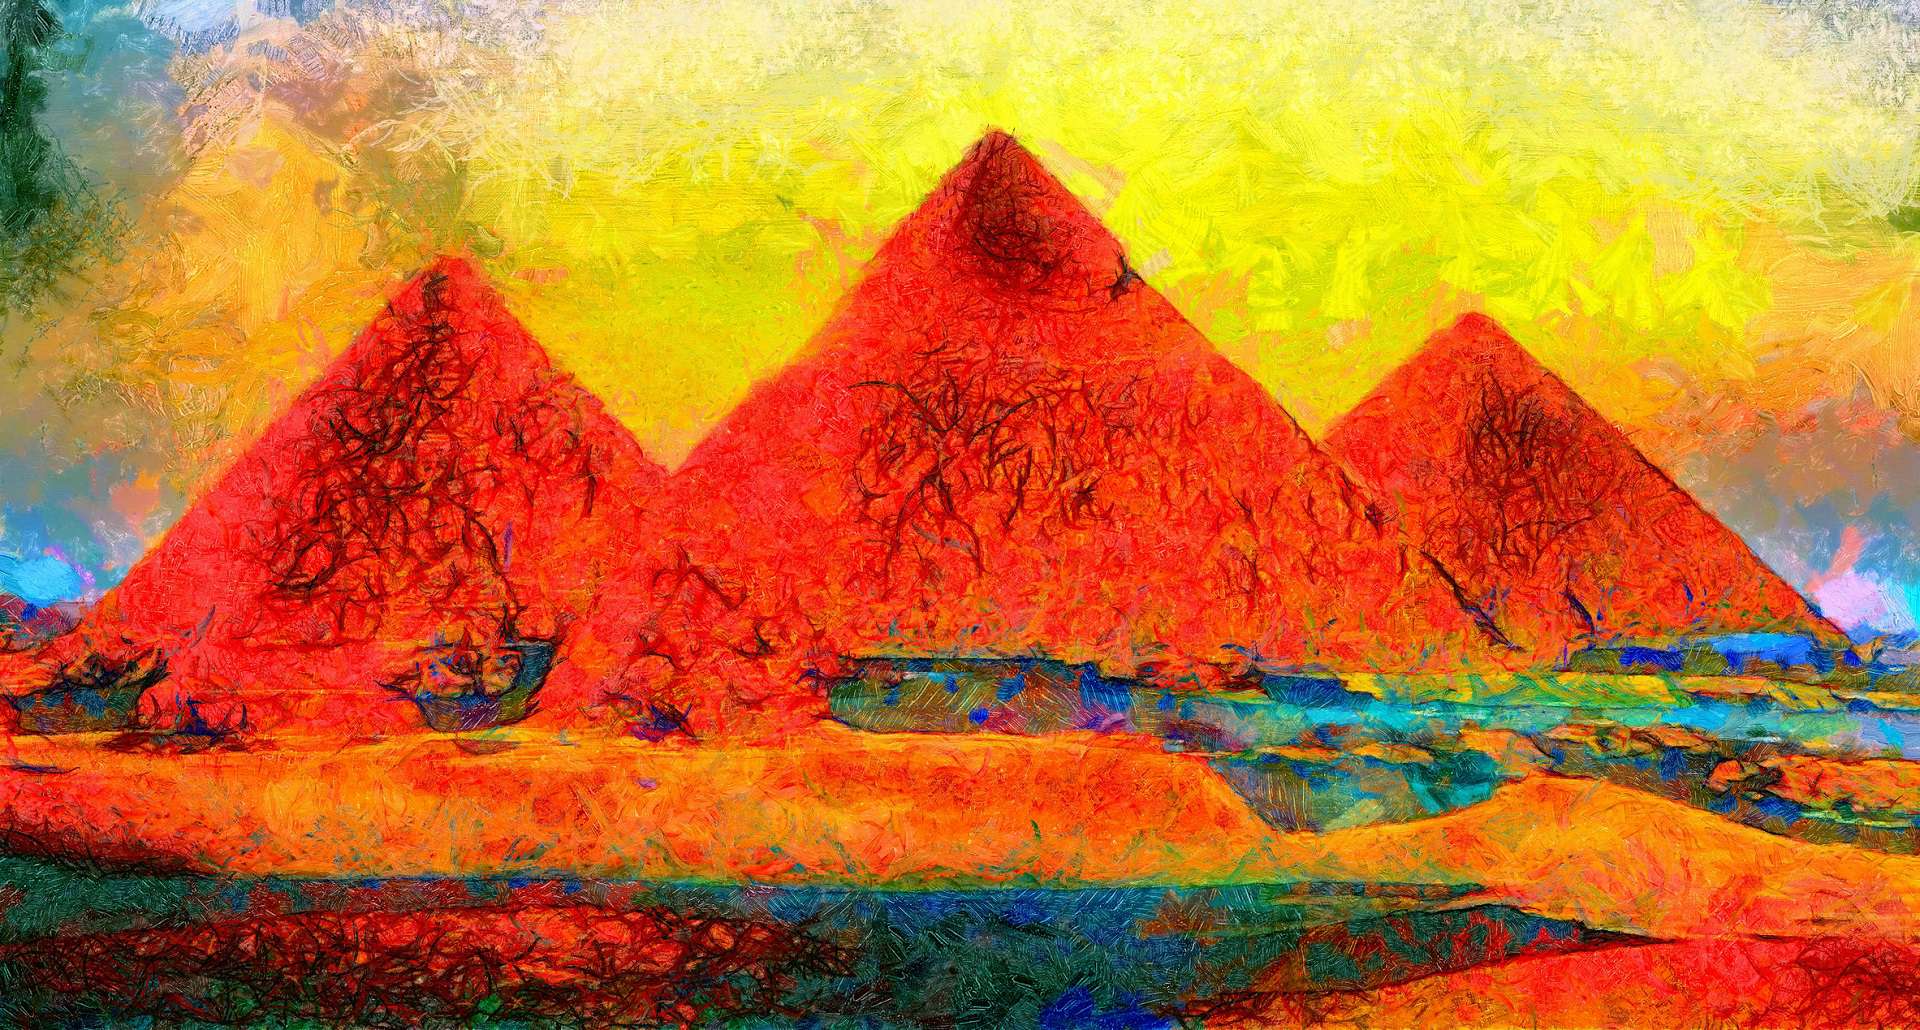 9 CZĘŚCI LUDZKIEJ DUSZY WEDŁUG WIERZEŃ STAROŻYTNEGO EGIPTU